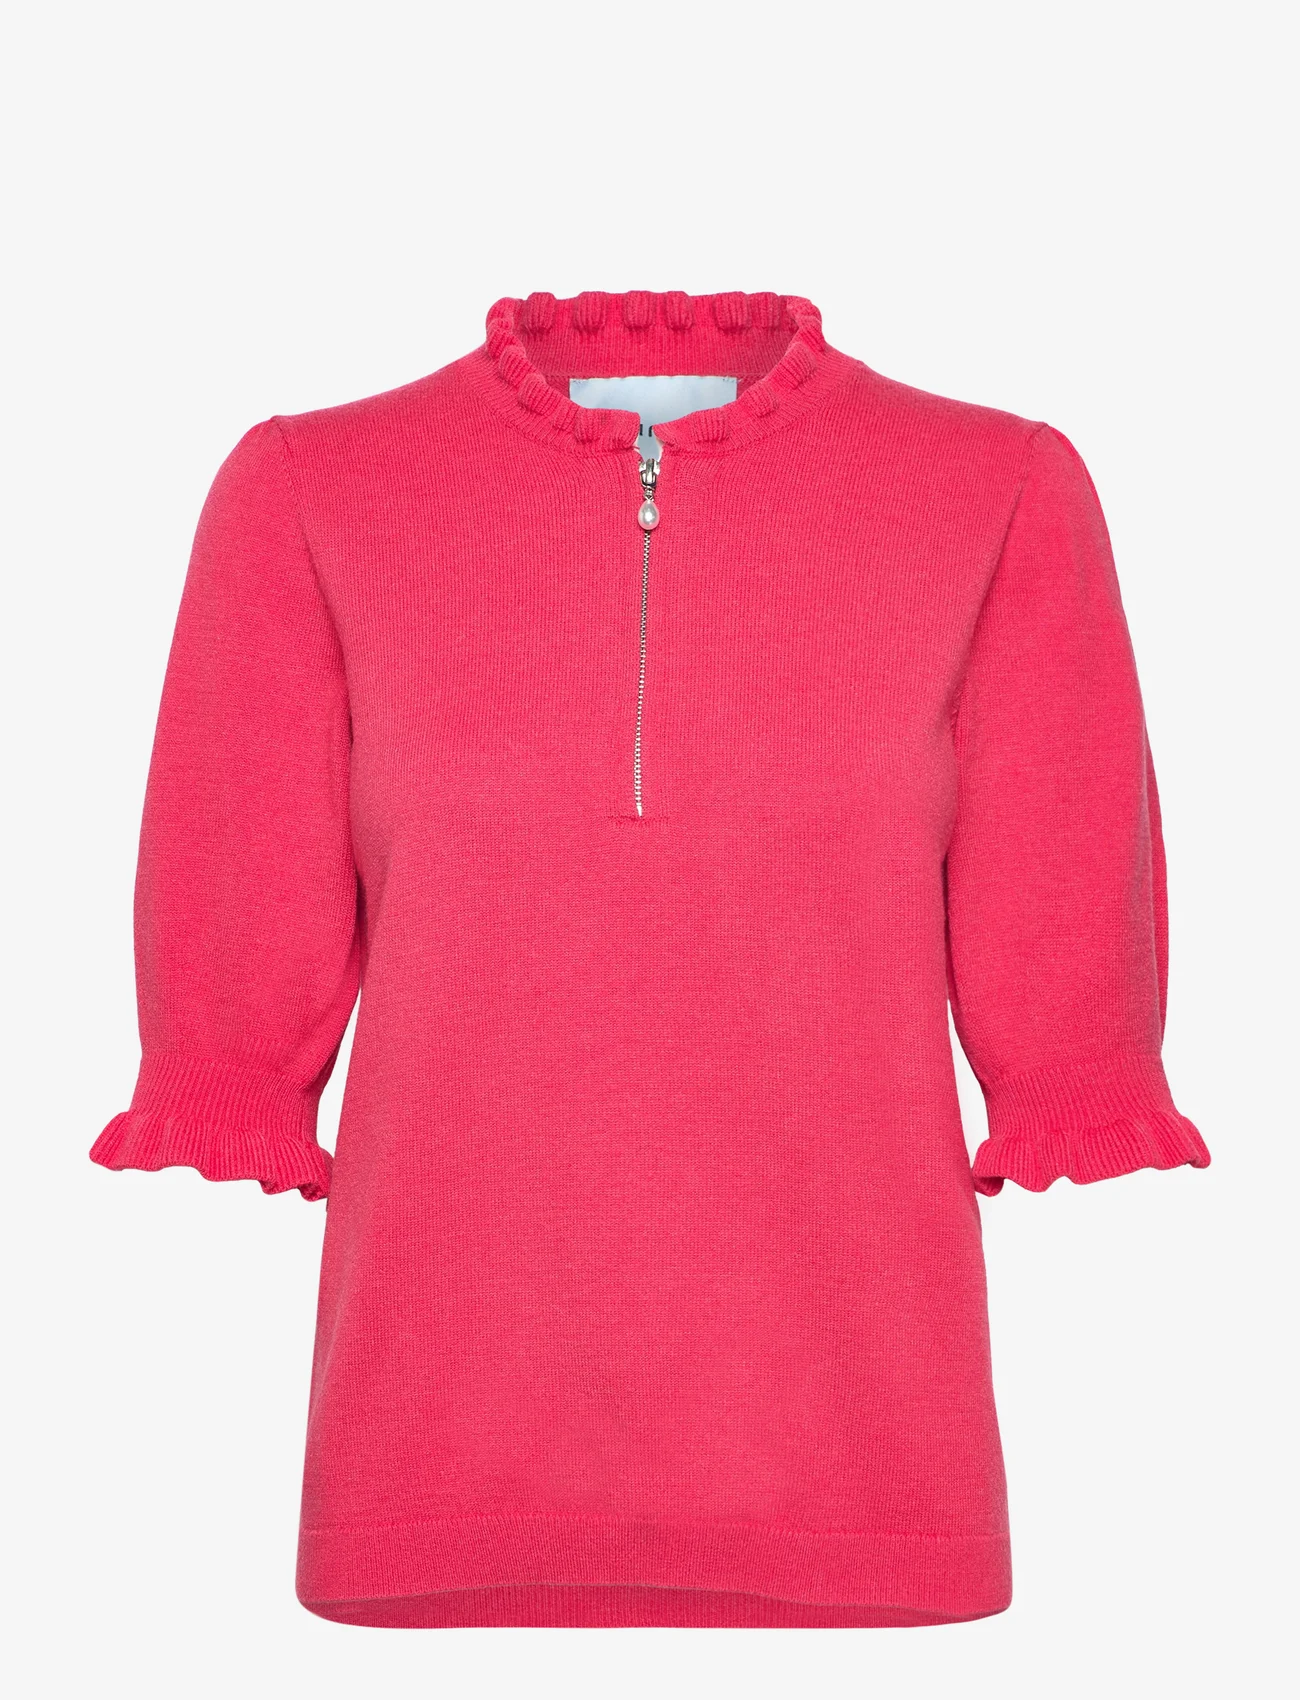 Minus - MSKessa Knit T-Shirt - trøjer - teaberry pink - 0